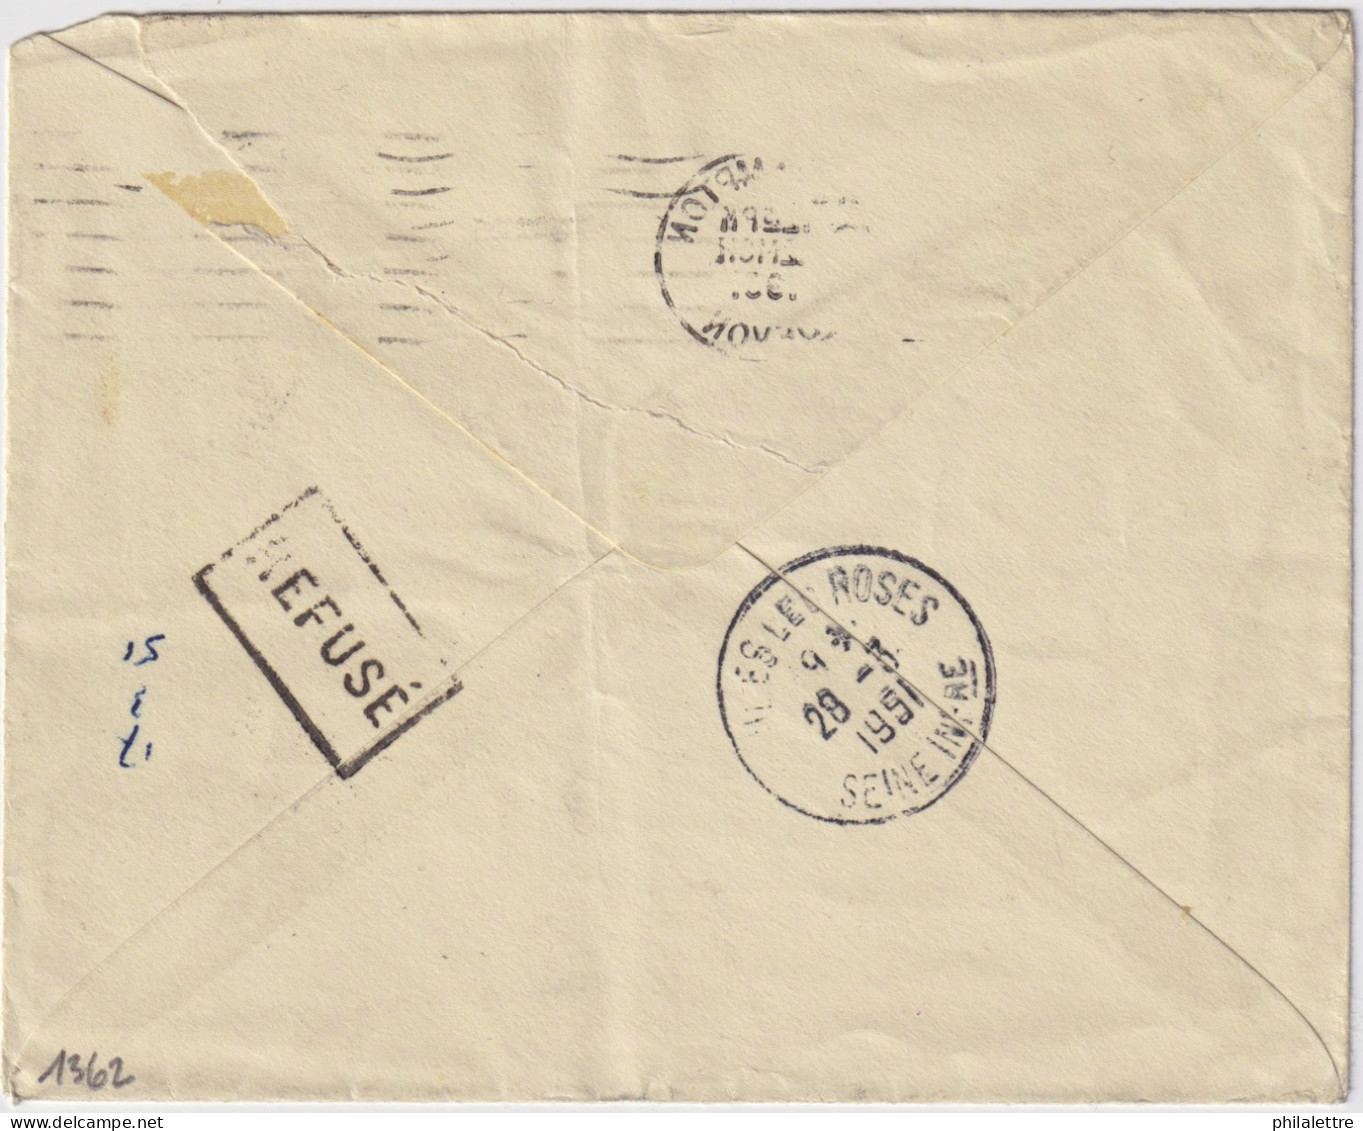 FRANCE 1951 LSC D'Angleterre Sous-affranchie (2-1/2d Pour 4d) Taxée 17f à Veules-les-Roses, Refusée, Taxée 4d Au Retour - 1859-1959 Covers & Documents